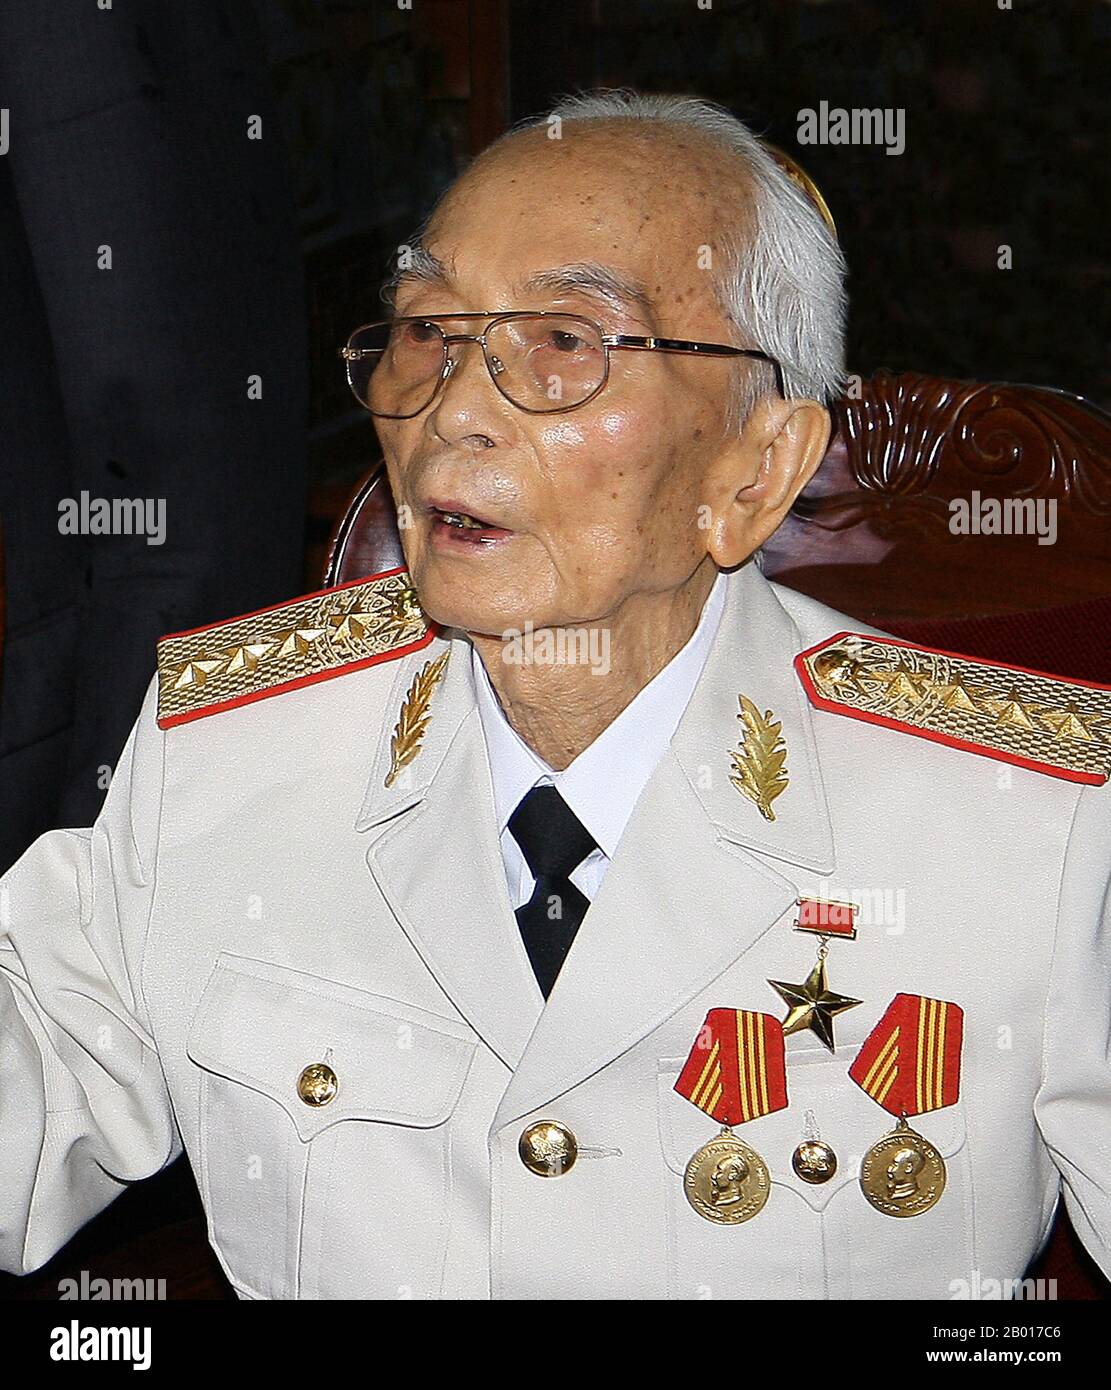 Vietnam: General Vo Nguyen Giap, víctor de Dien Bien Phu, de 97 años de edad. Foto de Ricardo Stuckert (PR/ABR/BRASIL) (Licencia CC BY-3,0), 2008. Vo Nguyen Giap (vietnamita: Võ Nguyên Giáp), nacido el 25 de agosto de 1911, falleció el 4 de octubre de 2013, fue un oficial vietnamita del Ejército Popular de Vietnam y un político. Fue comandante principal en dos guerras: La Primera Guerra Indochina (1946–1954) y la Segunda Guerra Indochina (1960–1975). Participó en las siguientes batallas históricamente significativas: Lạng Sơn (1950); Hòa Bình (1951–1952); Điện Biên Phủ (1954) y la ofensiva de Tết (1968), entre otras. Foto de stock